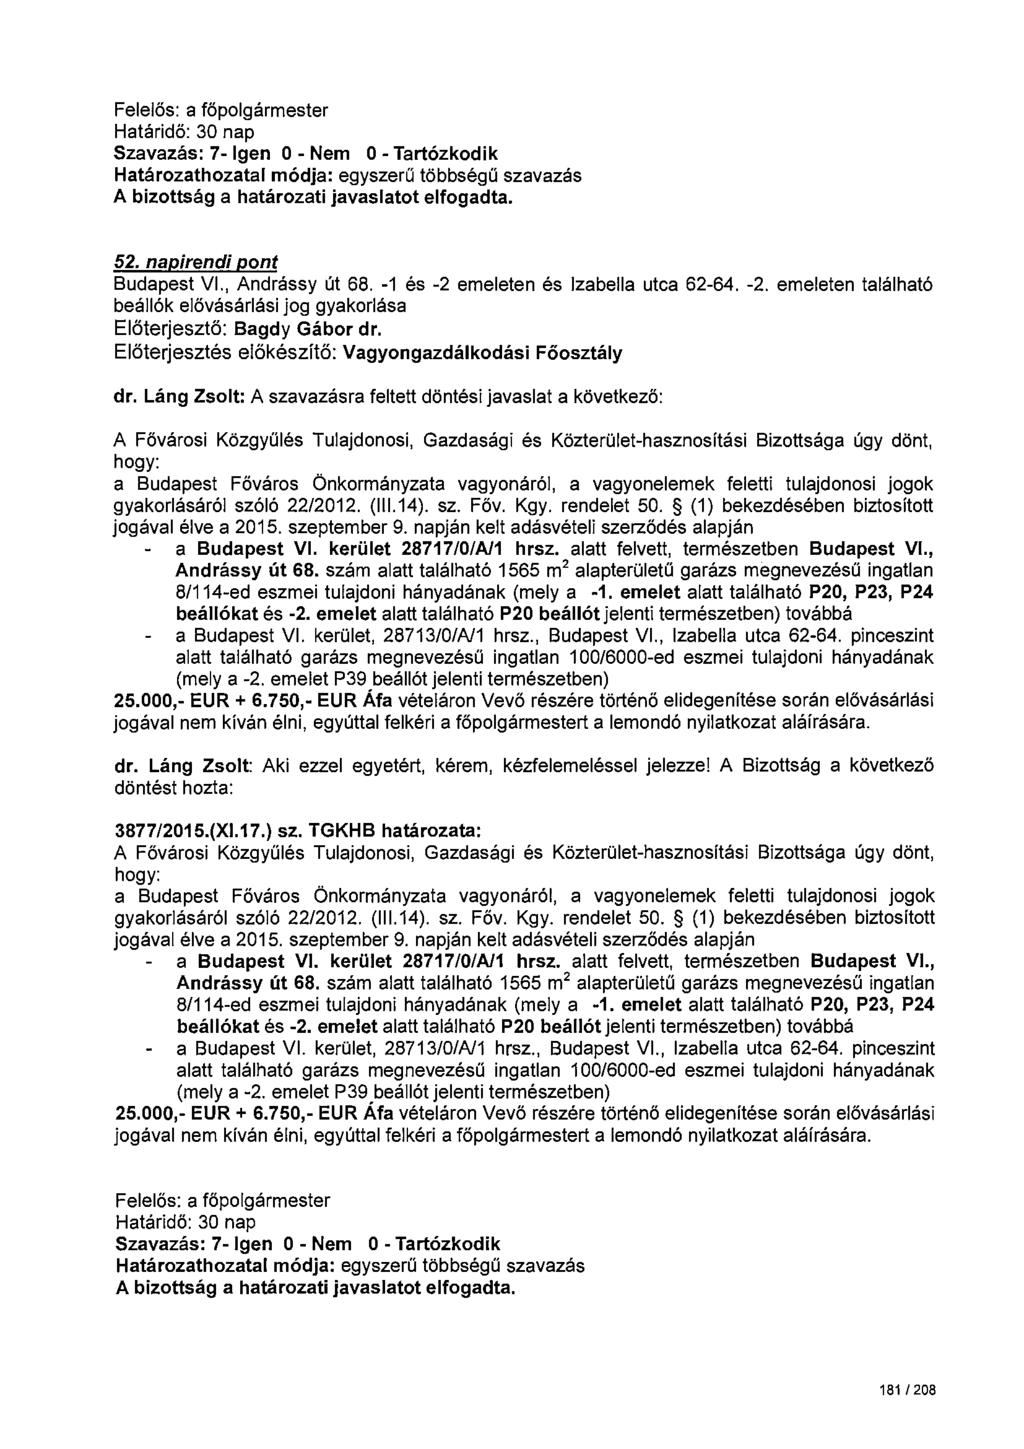 Felelős: a főpolgármester Szavazás: 7- Igen 0 - Nem 0 -Tartózkodik 52. napirendi pont Budapest VI Andrássy út 68. -1 és -2 